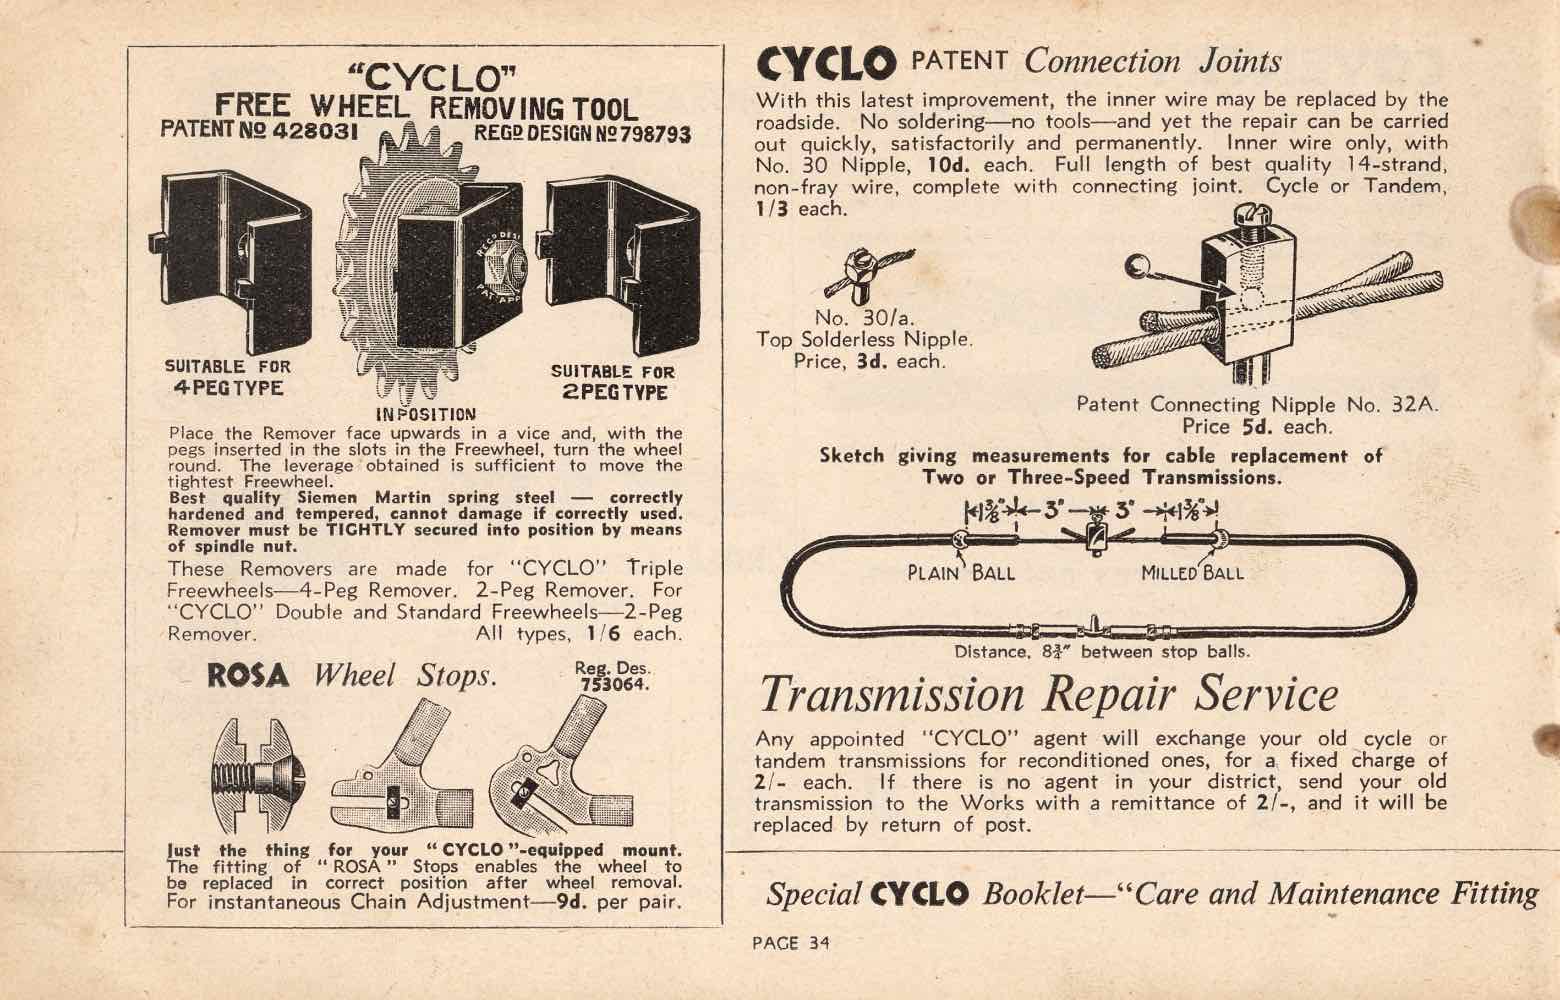 Cyclo Catalogue 399 - page 34 main image